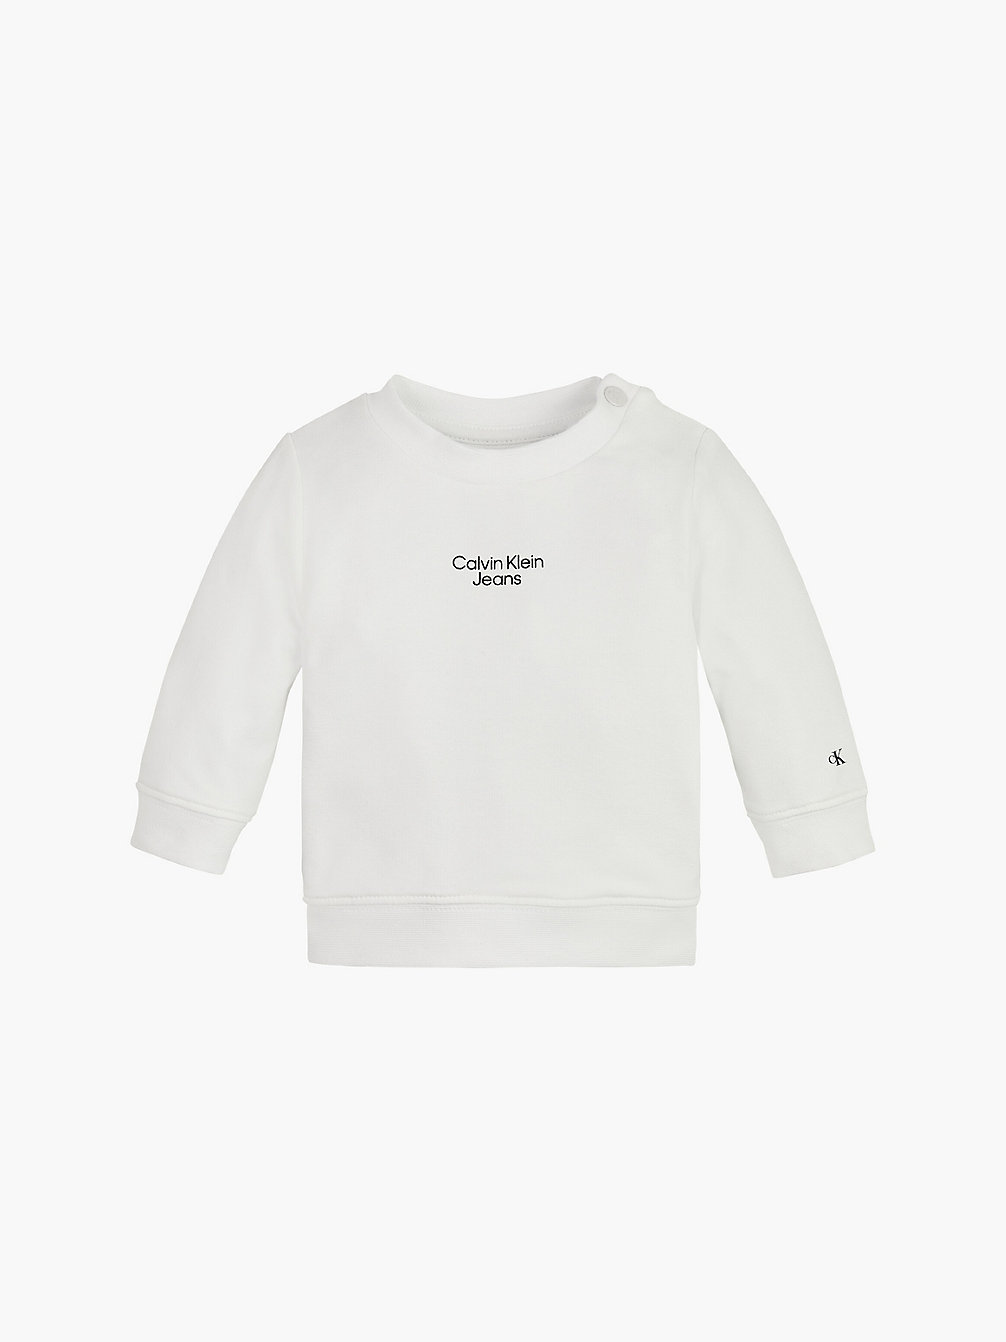 BRIGHT WHITE > Baby-Sweatshirt Aus Bio-Baumwolle > undefined newborn - Calvin Klein